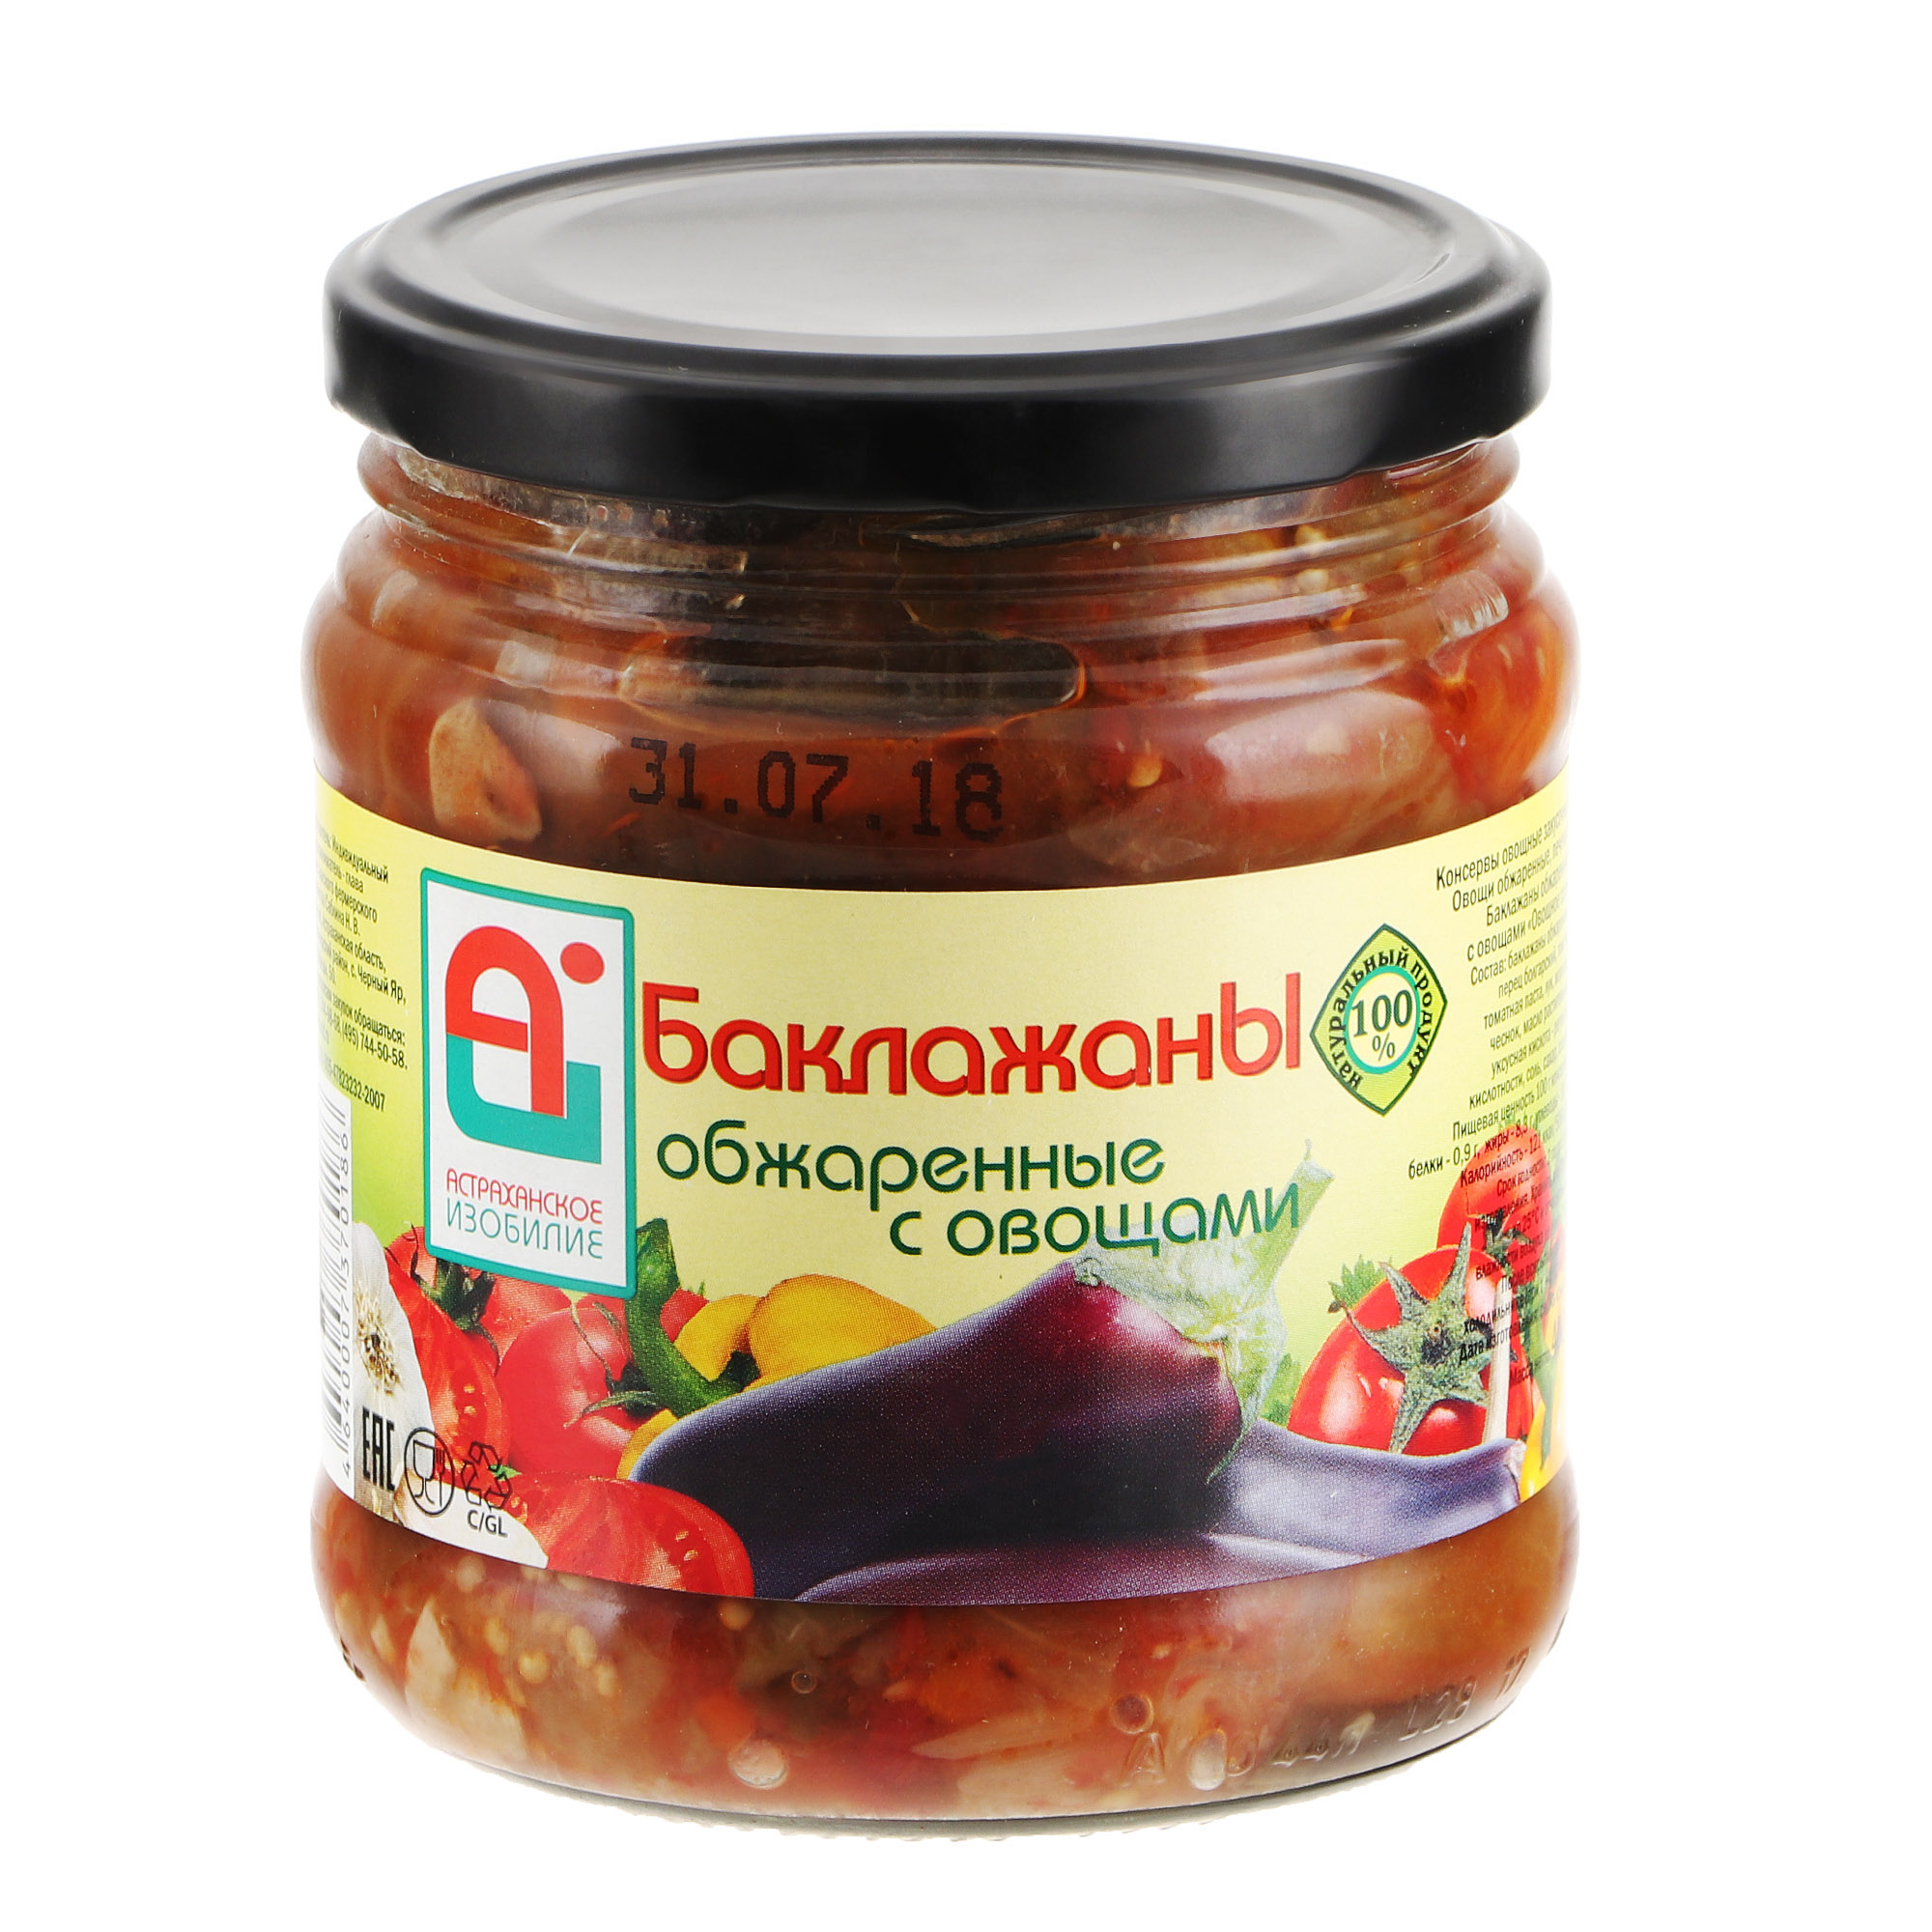 Баклажаны обжаренные Астраханское Изобилие с овощами 500 г лечо астраханское изобилие деликатесное 480 г